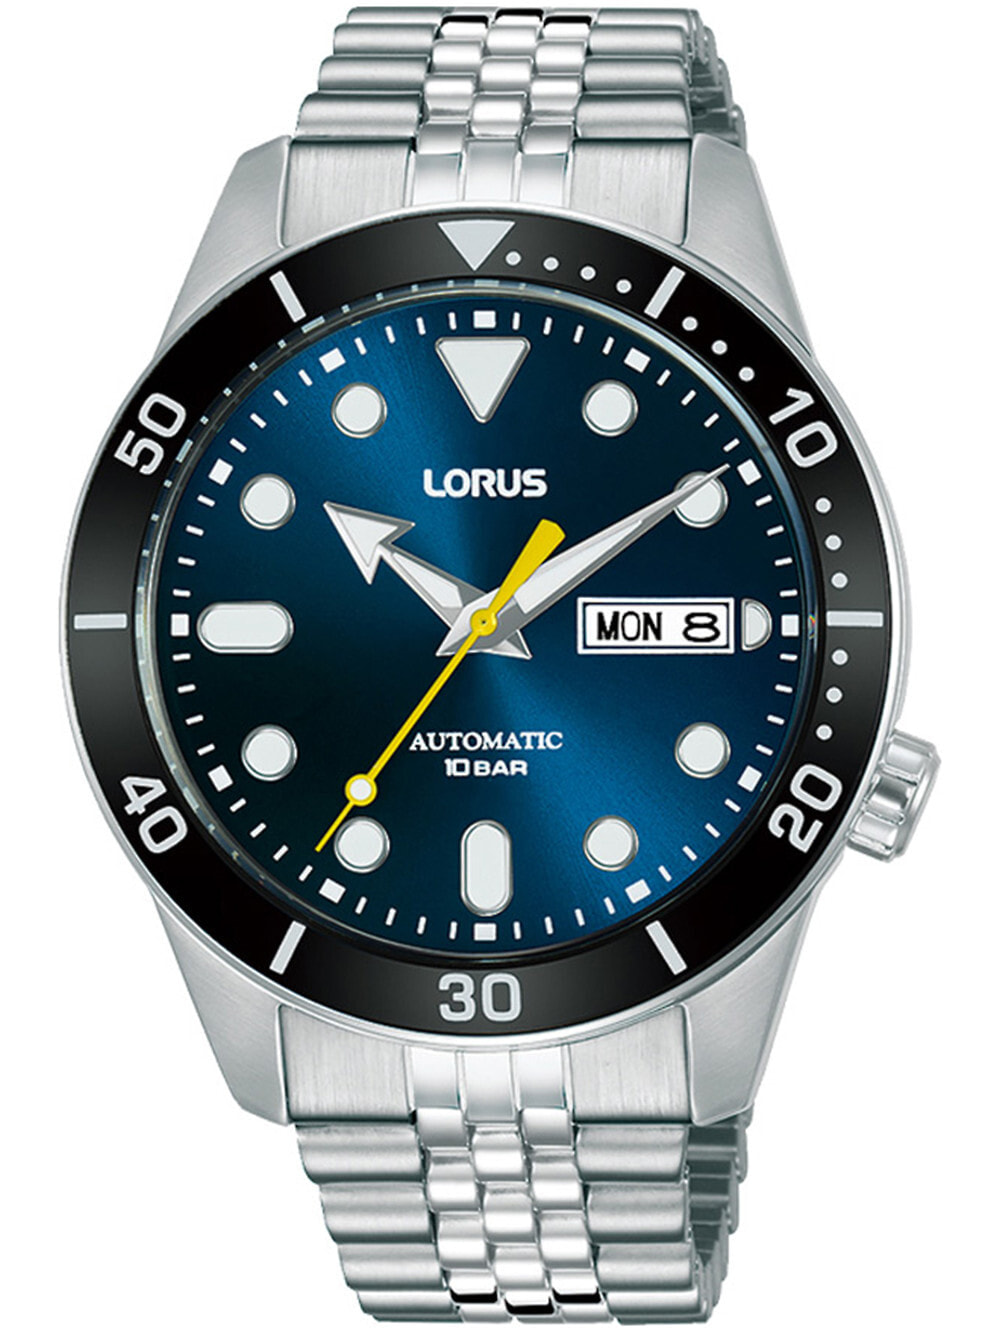 Мужские наручные часы с серебряным браслетом Lorus RL449AX9 automatic mens 42mm 10ATM